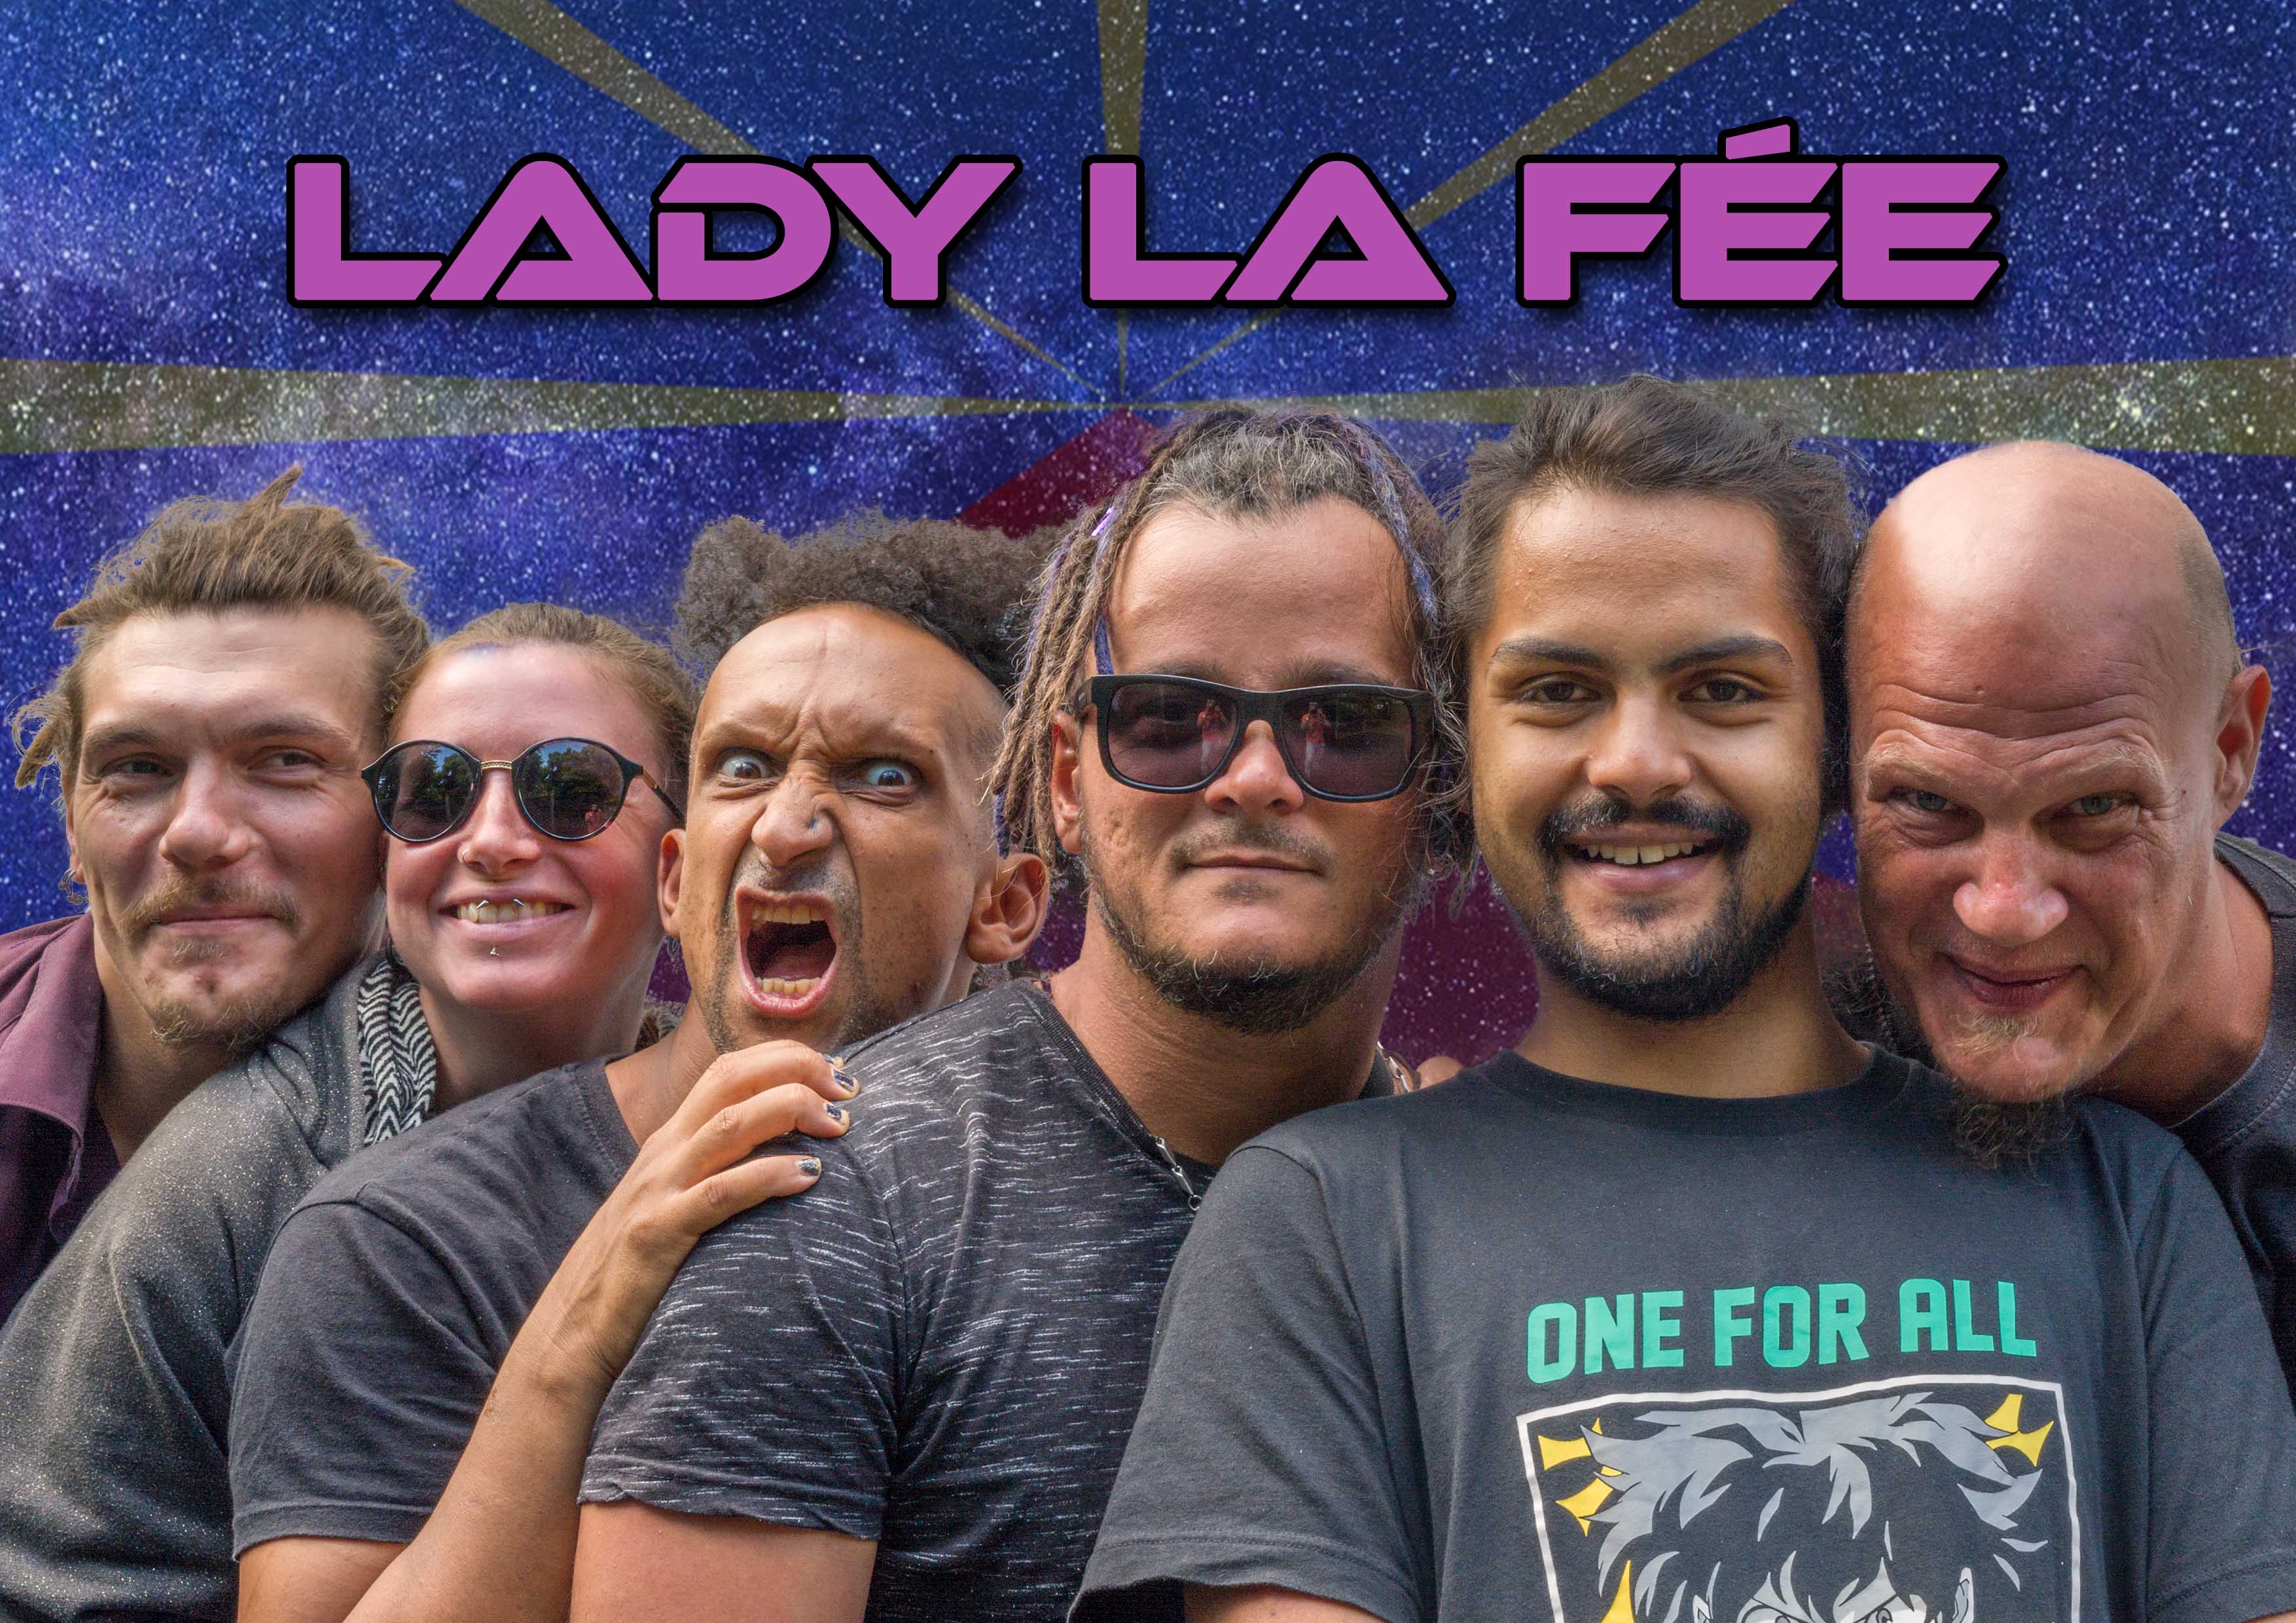 Lady La Fée débute sa tournée en France, en partenariat contre le SAF